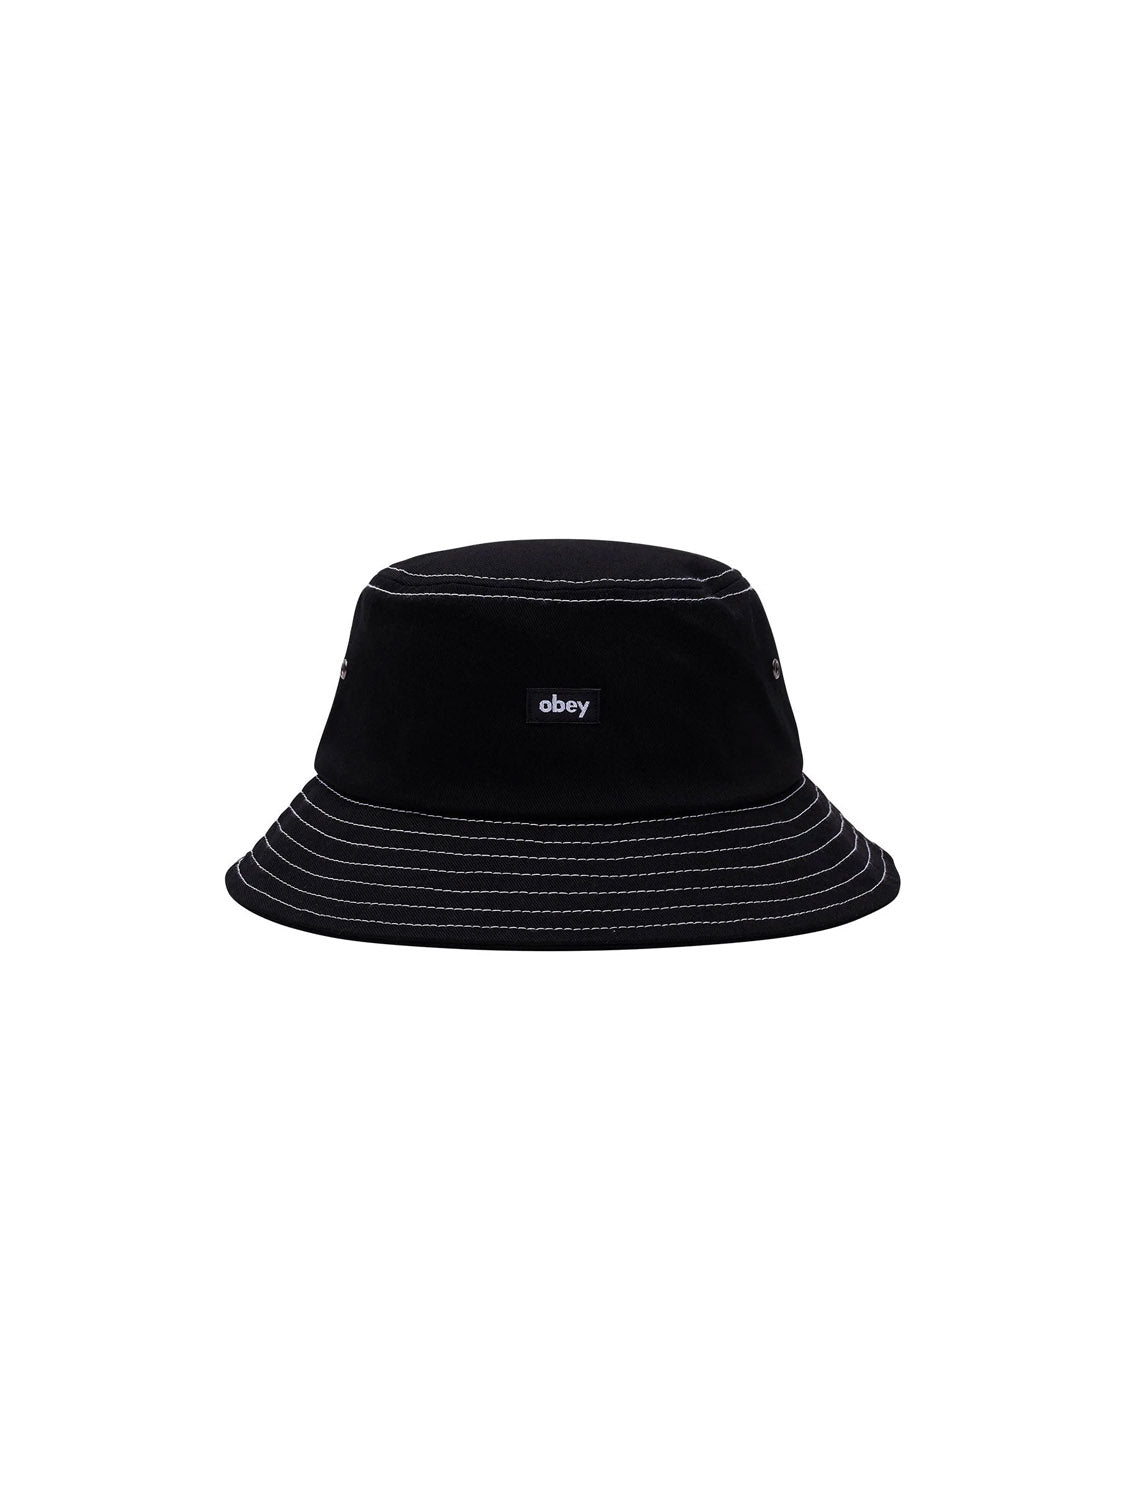 Obey Mac Bucket Hat